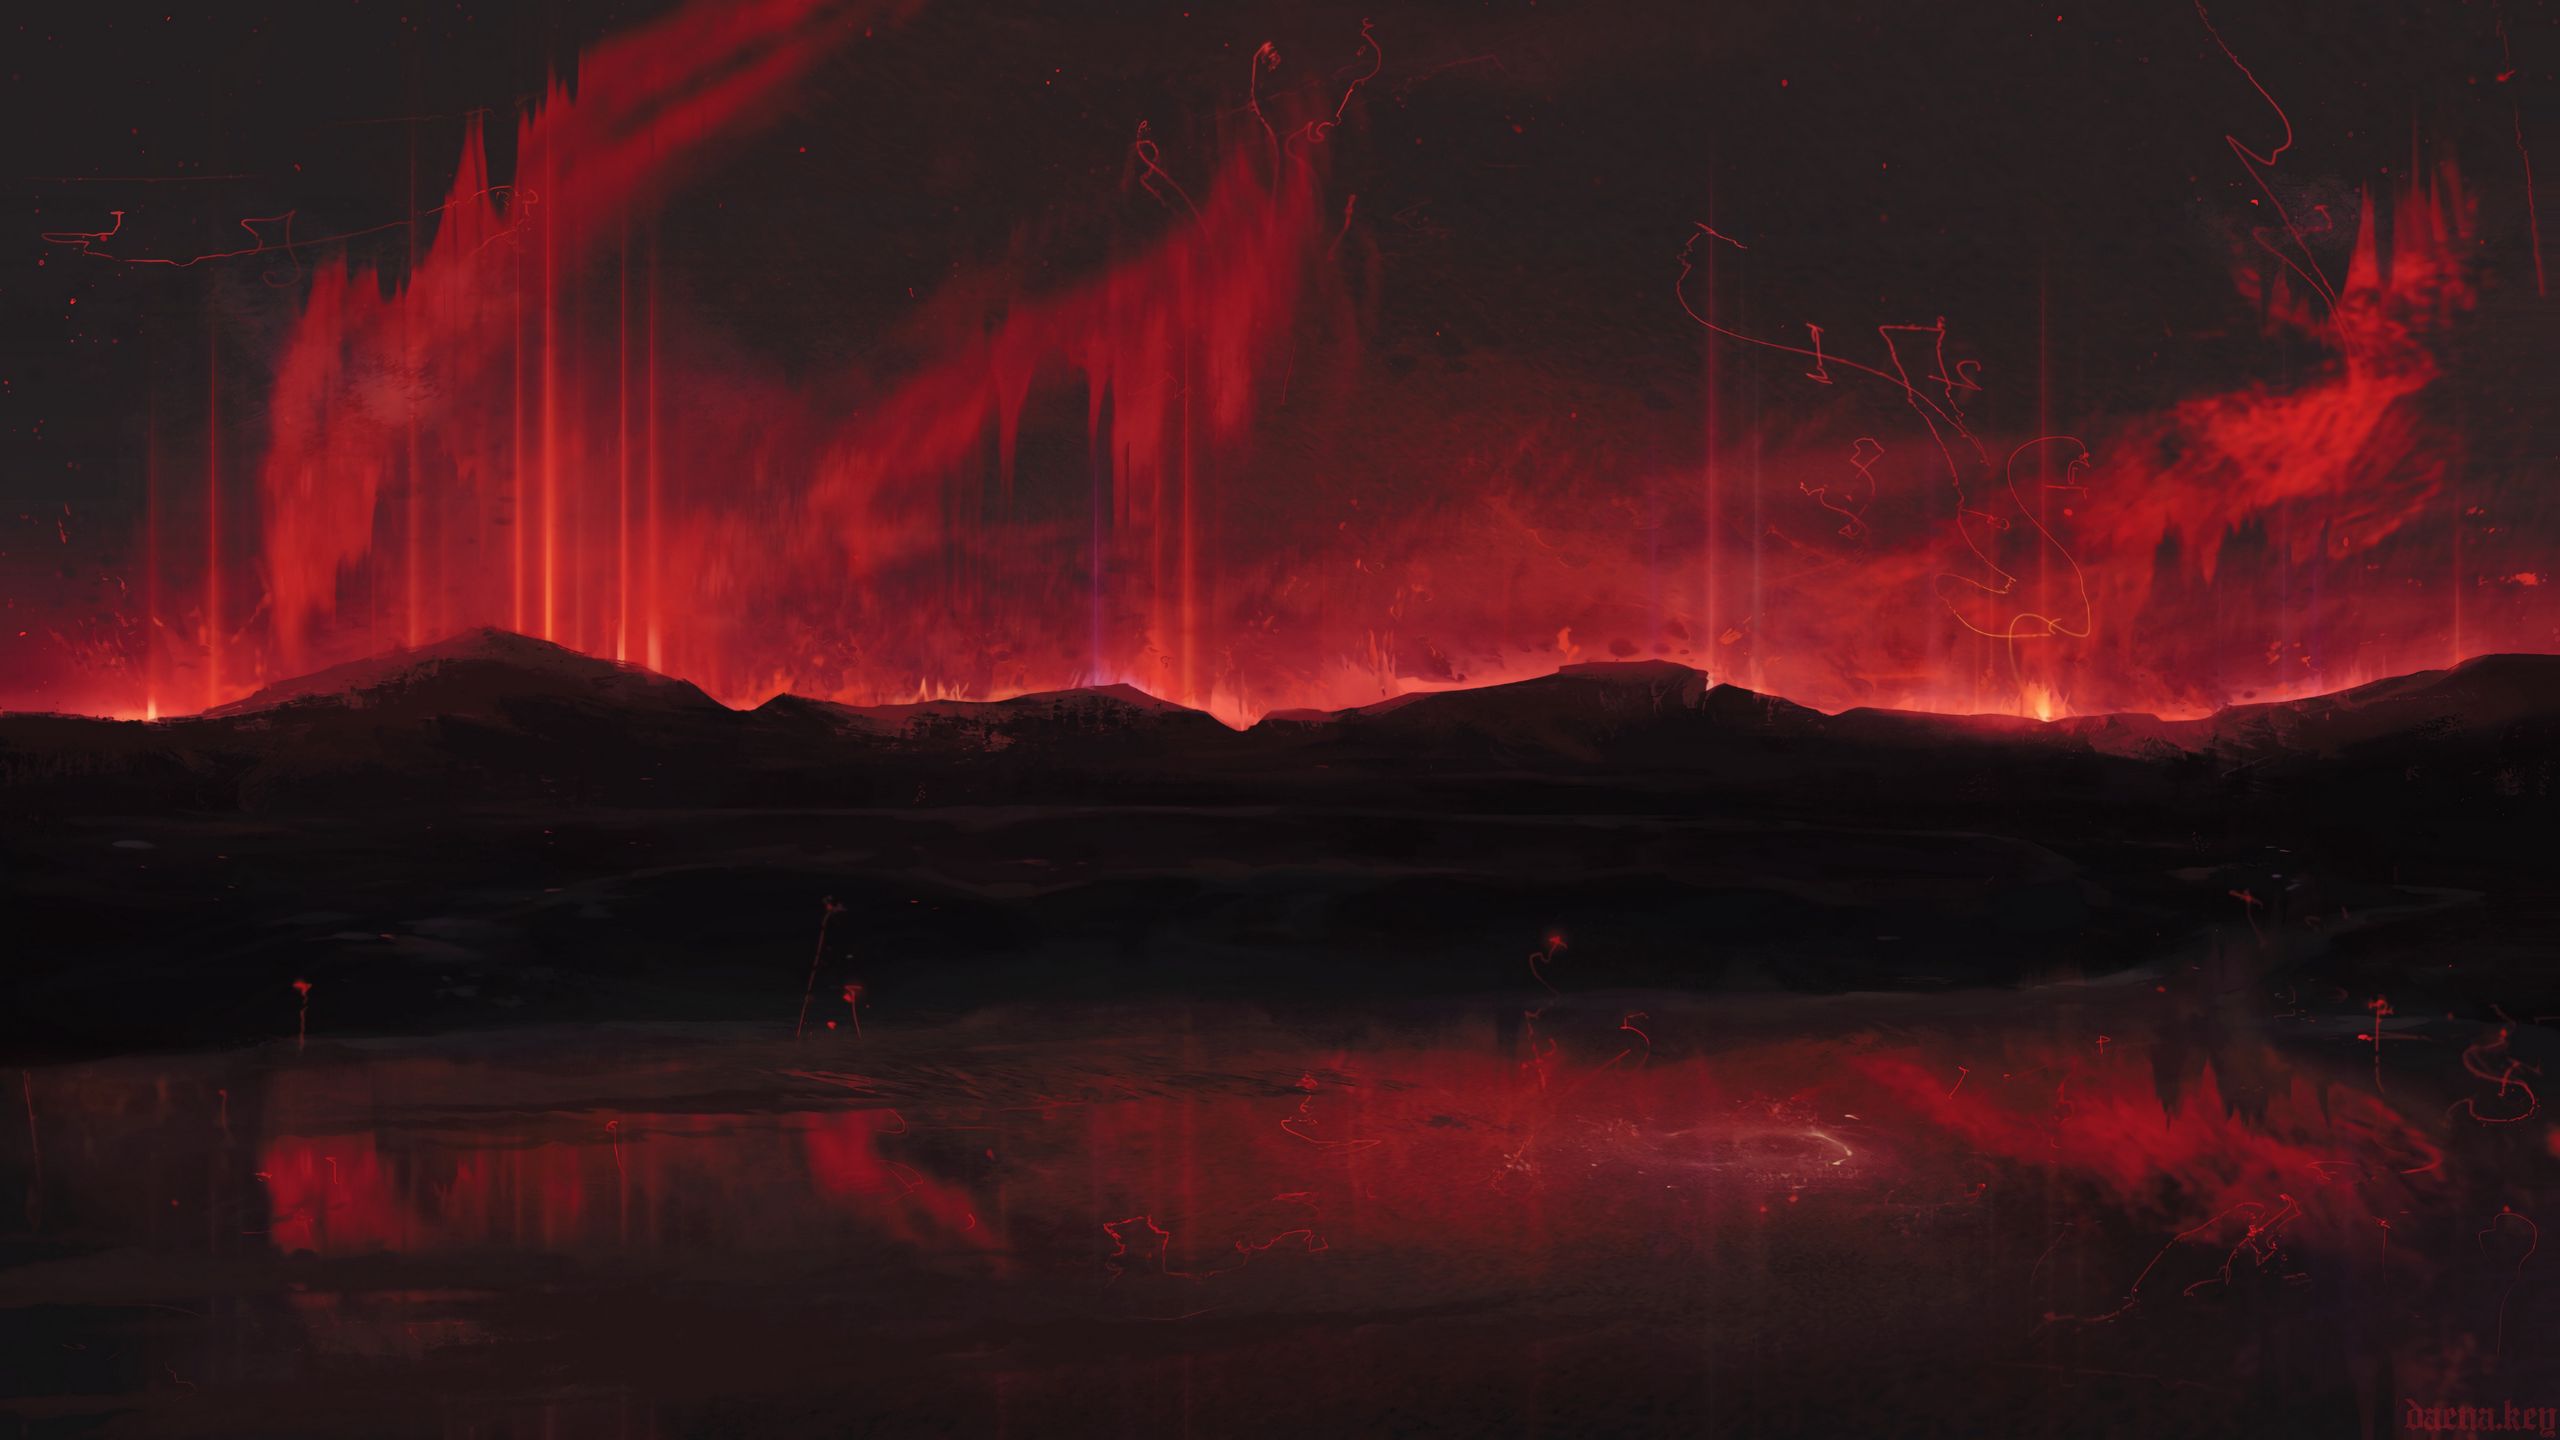 Núi đen đỏ: Núi đen đỏ được khai thác thành những tác phẩm nghệ thuật tuyệt đẹp và độc đáo. Những bức tranh, hình ảnh hùng vĩ với màu cơ bản đỏ và đen đậm sẽ làm bạn say đắm, hồi hợp và cảm nhận được sức mạnh trong tác phẩm.